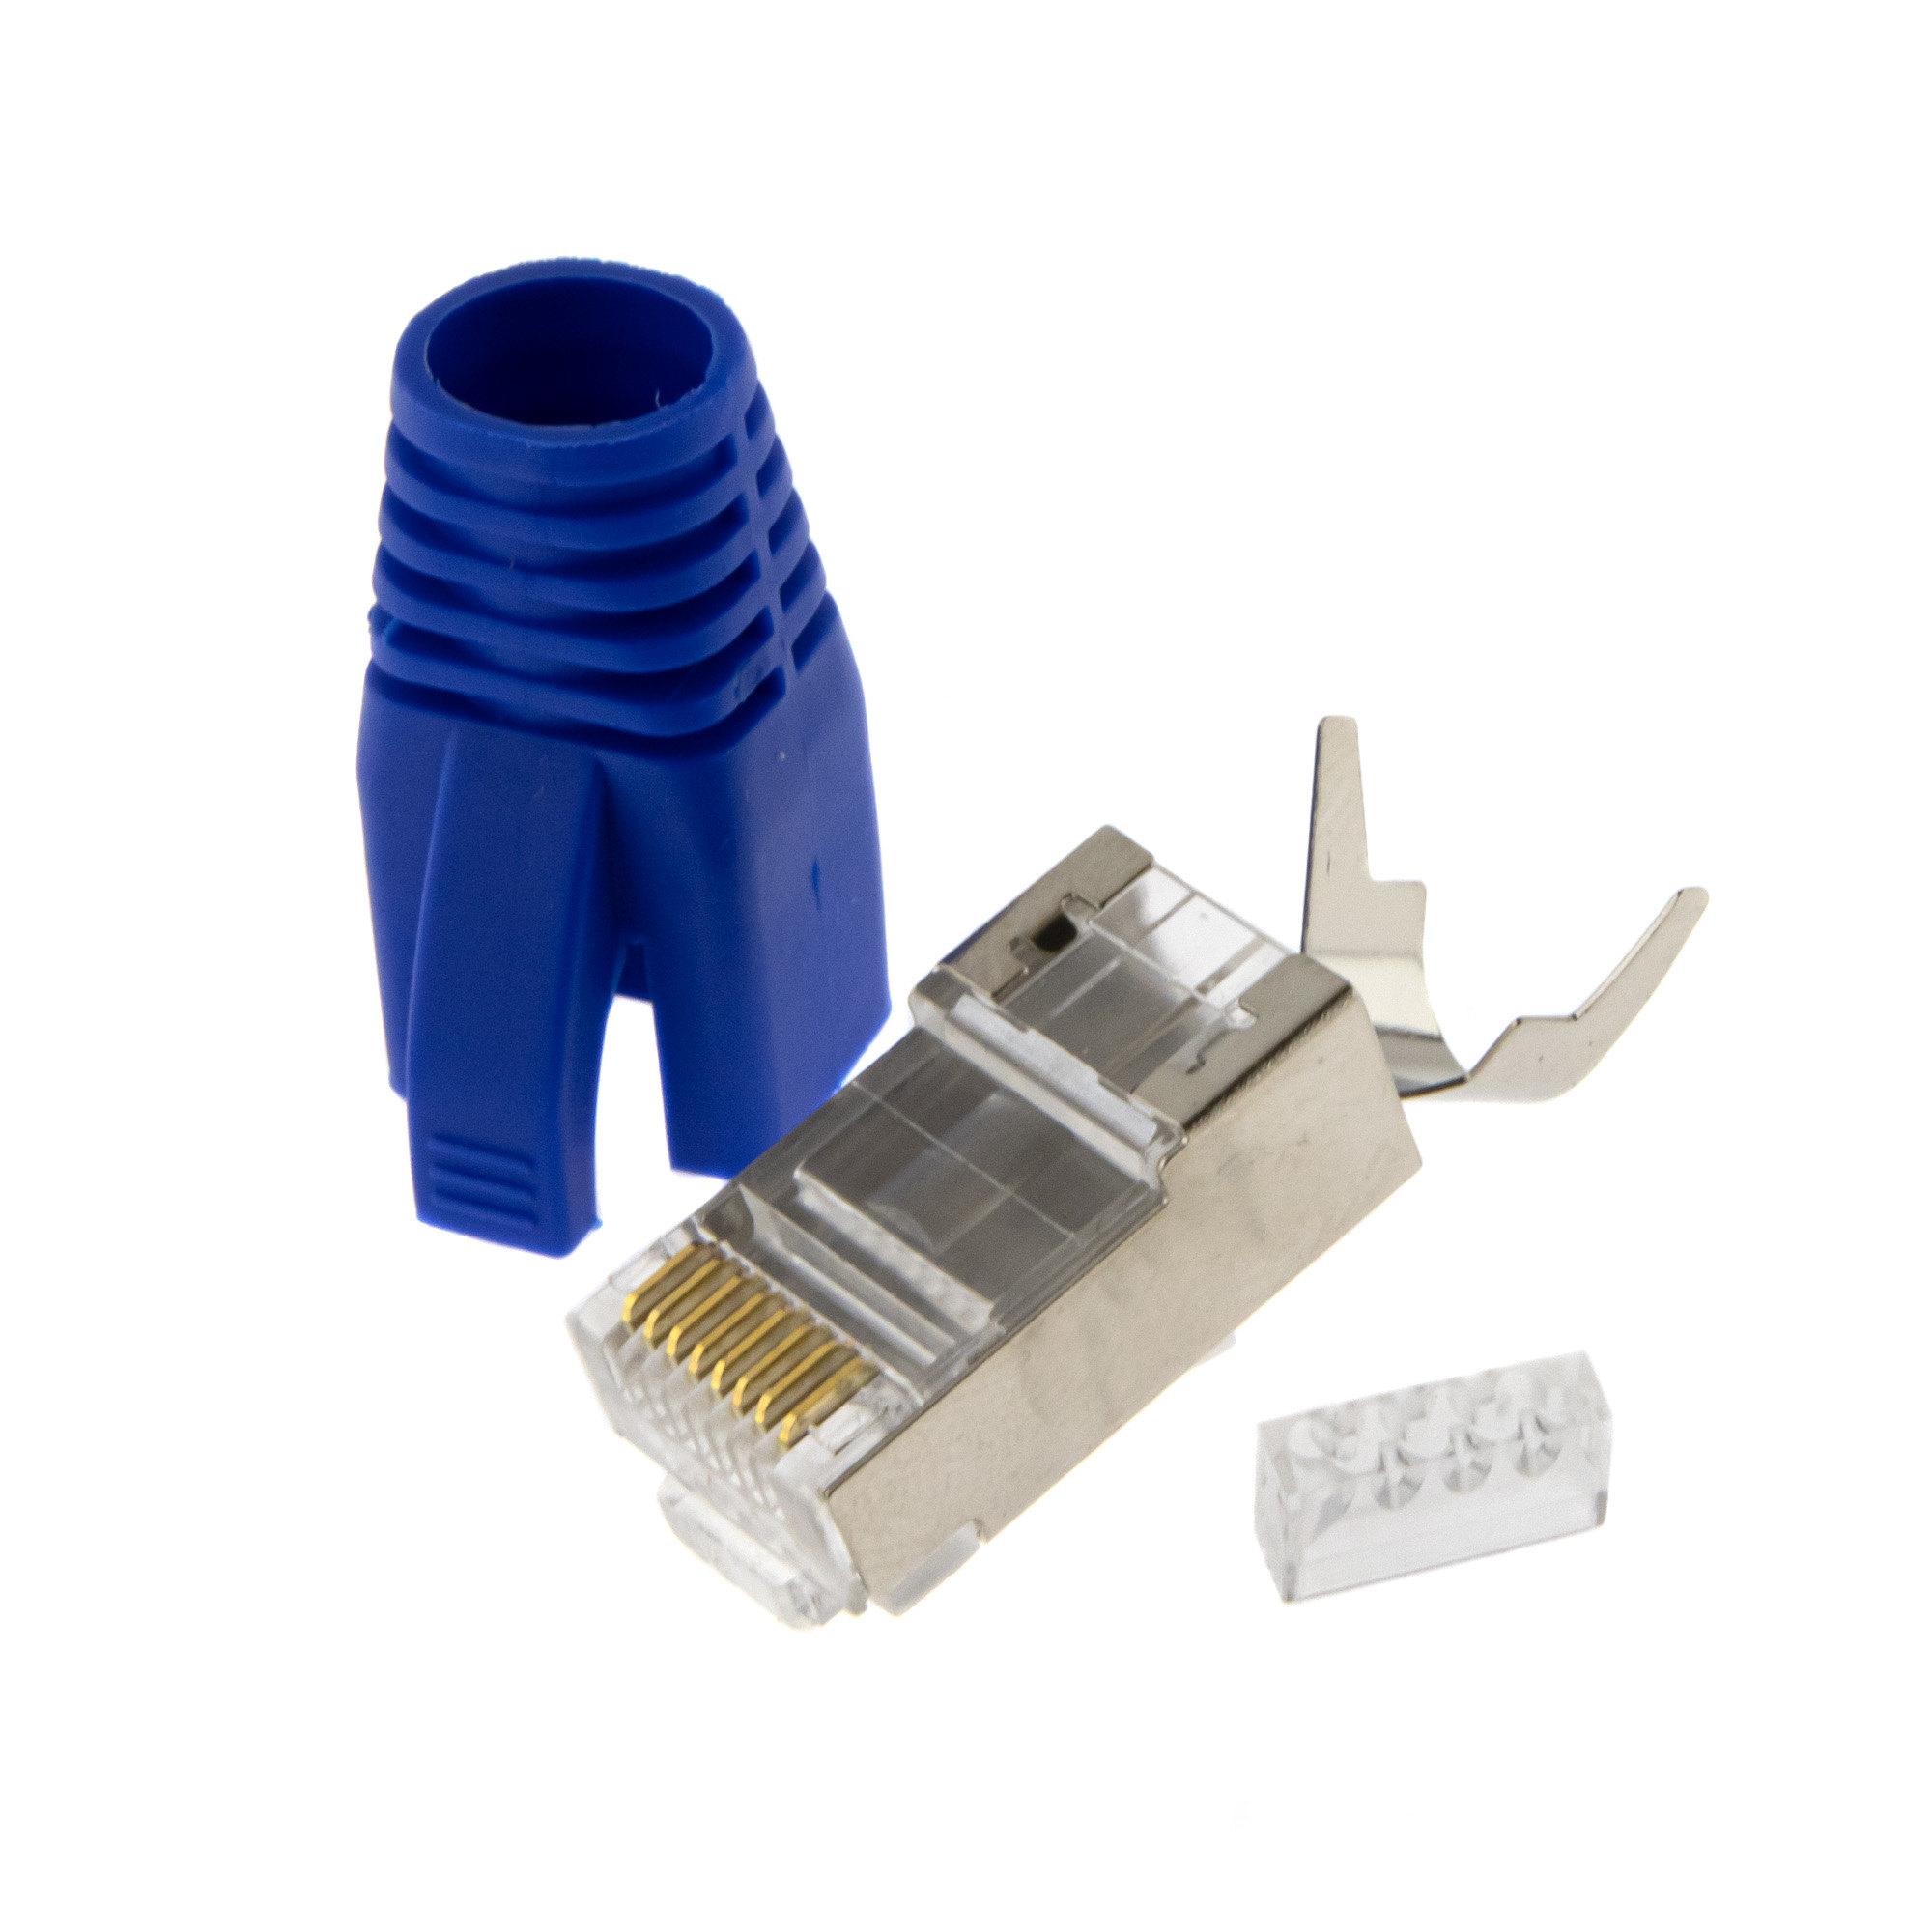 RJ45 connector + insertion aid + plug cap 10PCS - blue